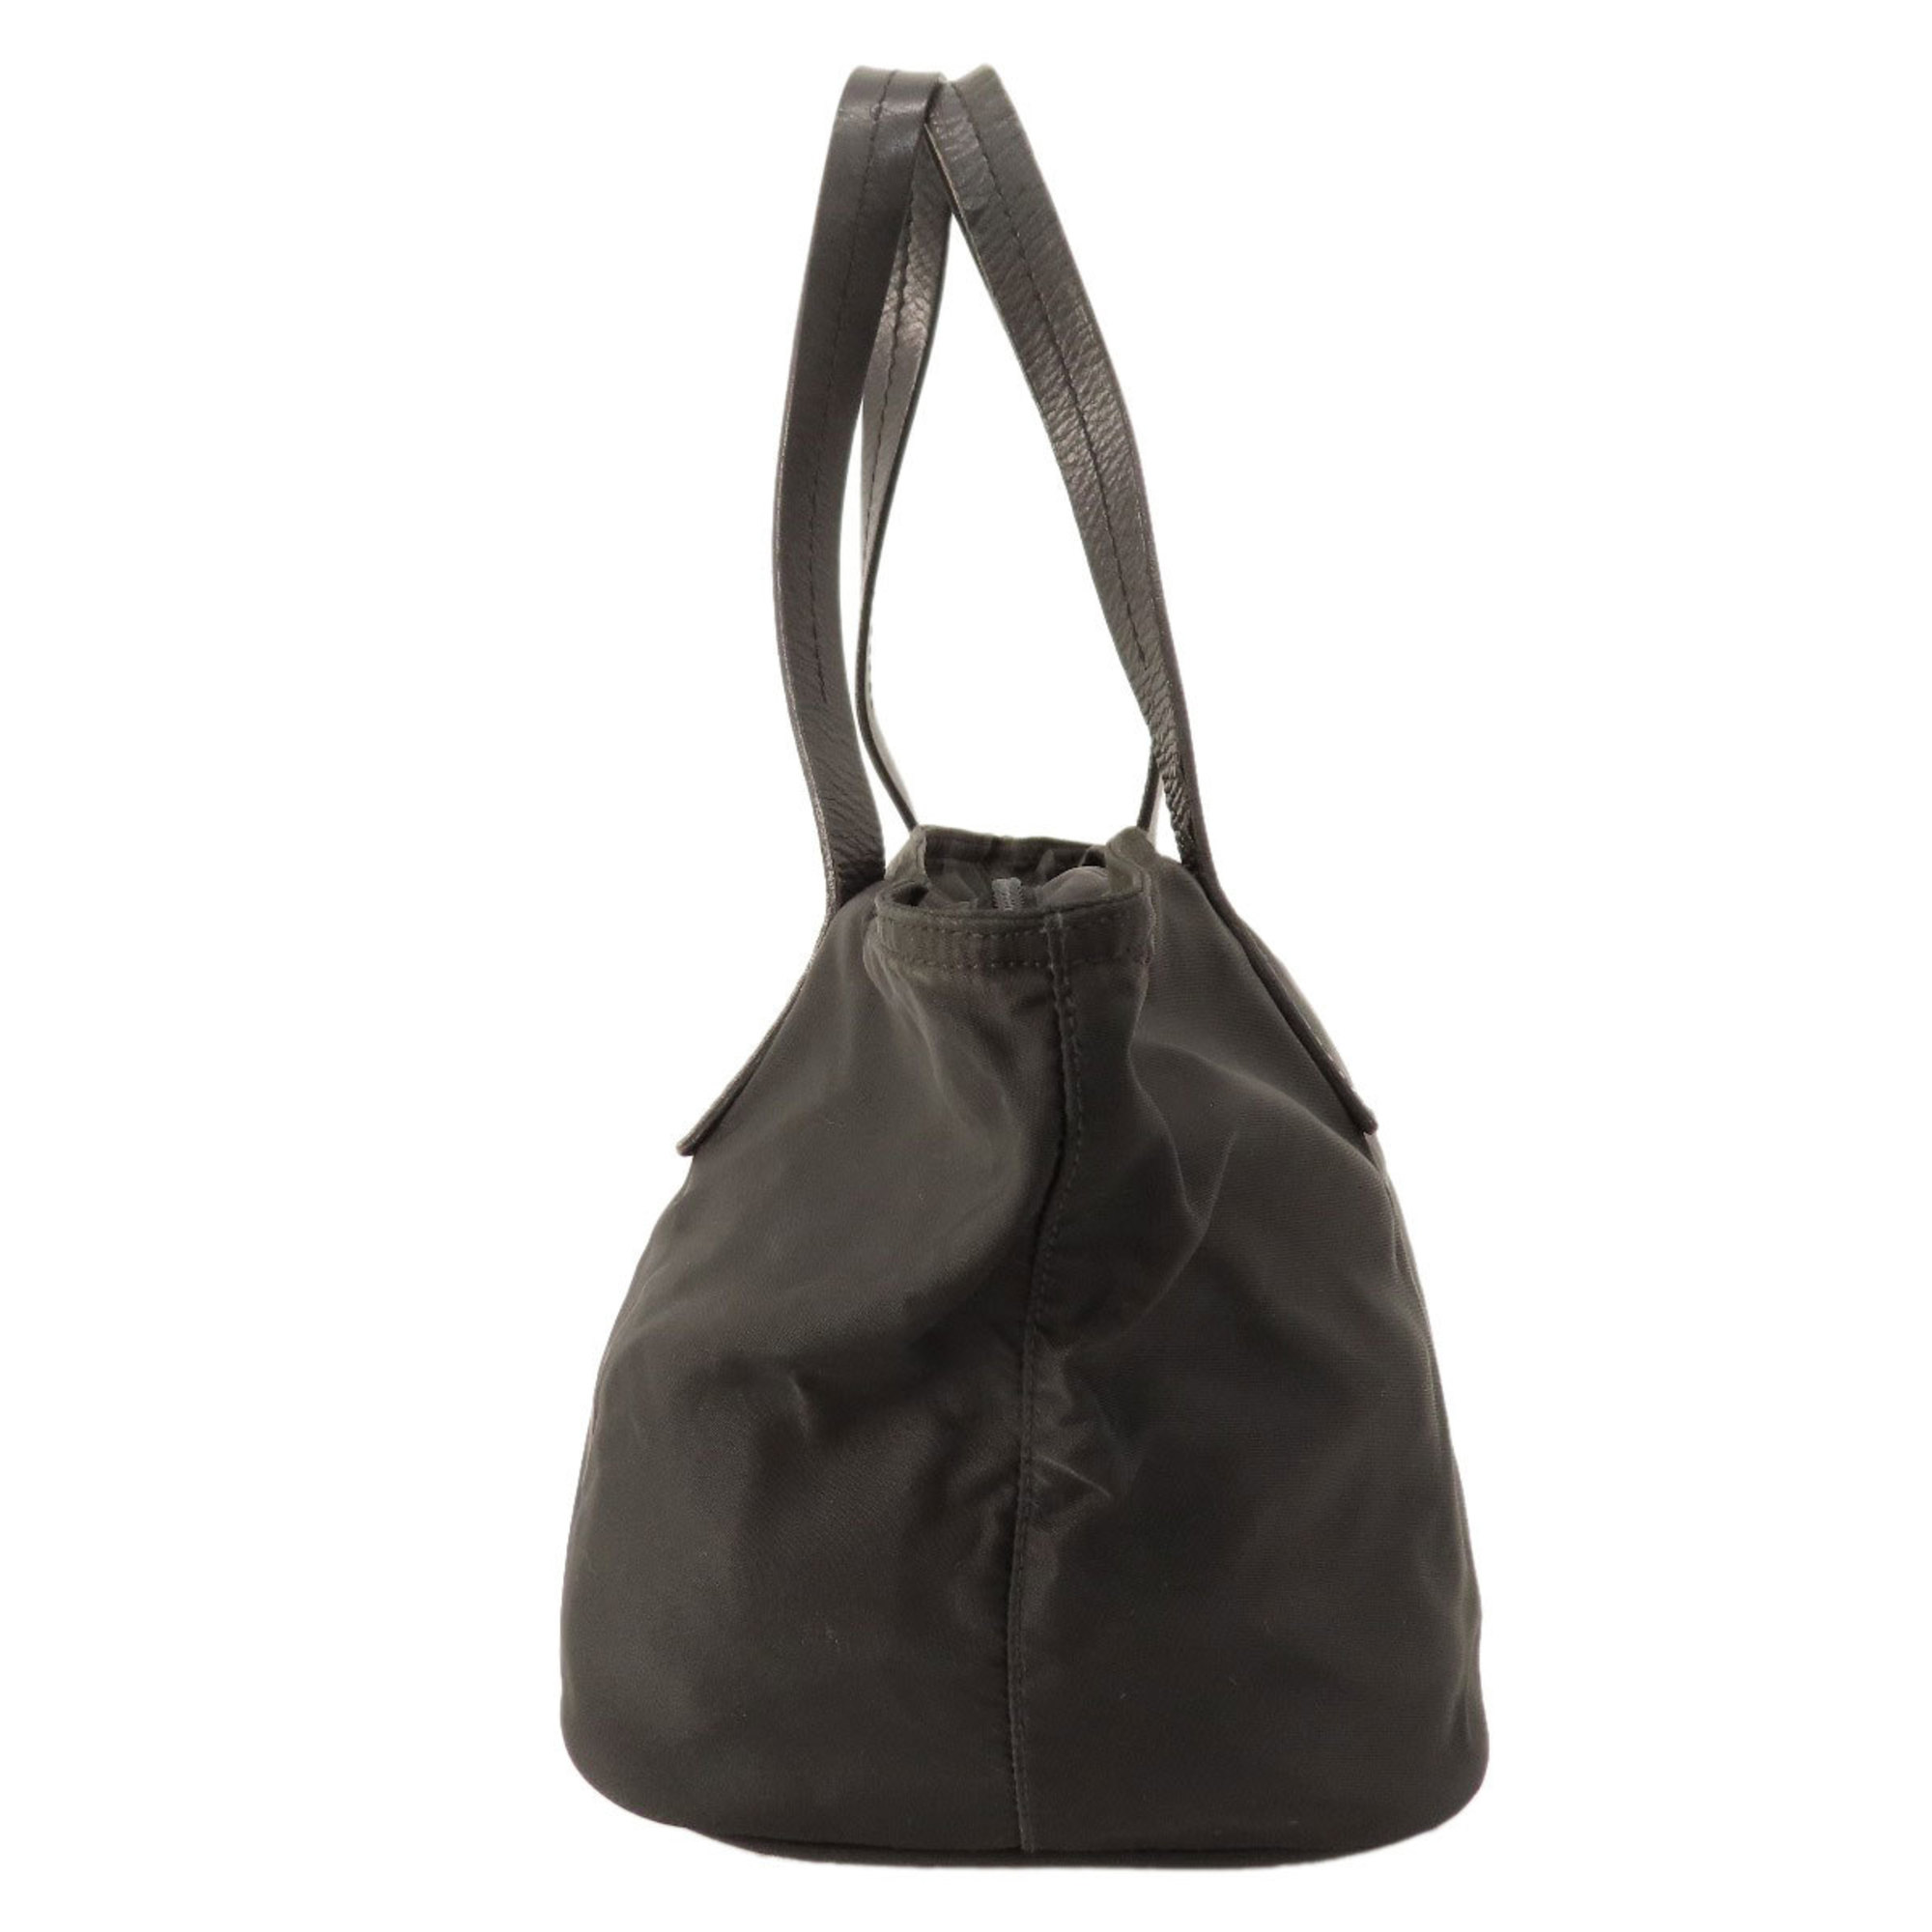 Prada metal fittings handbag nylon material women's PRADA